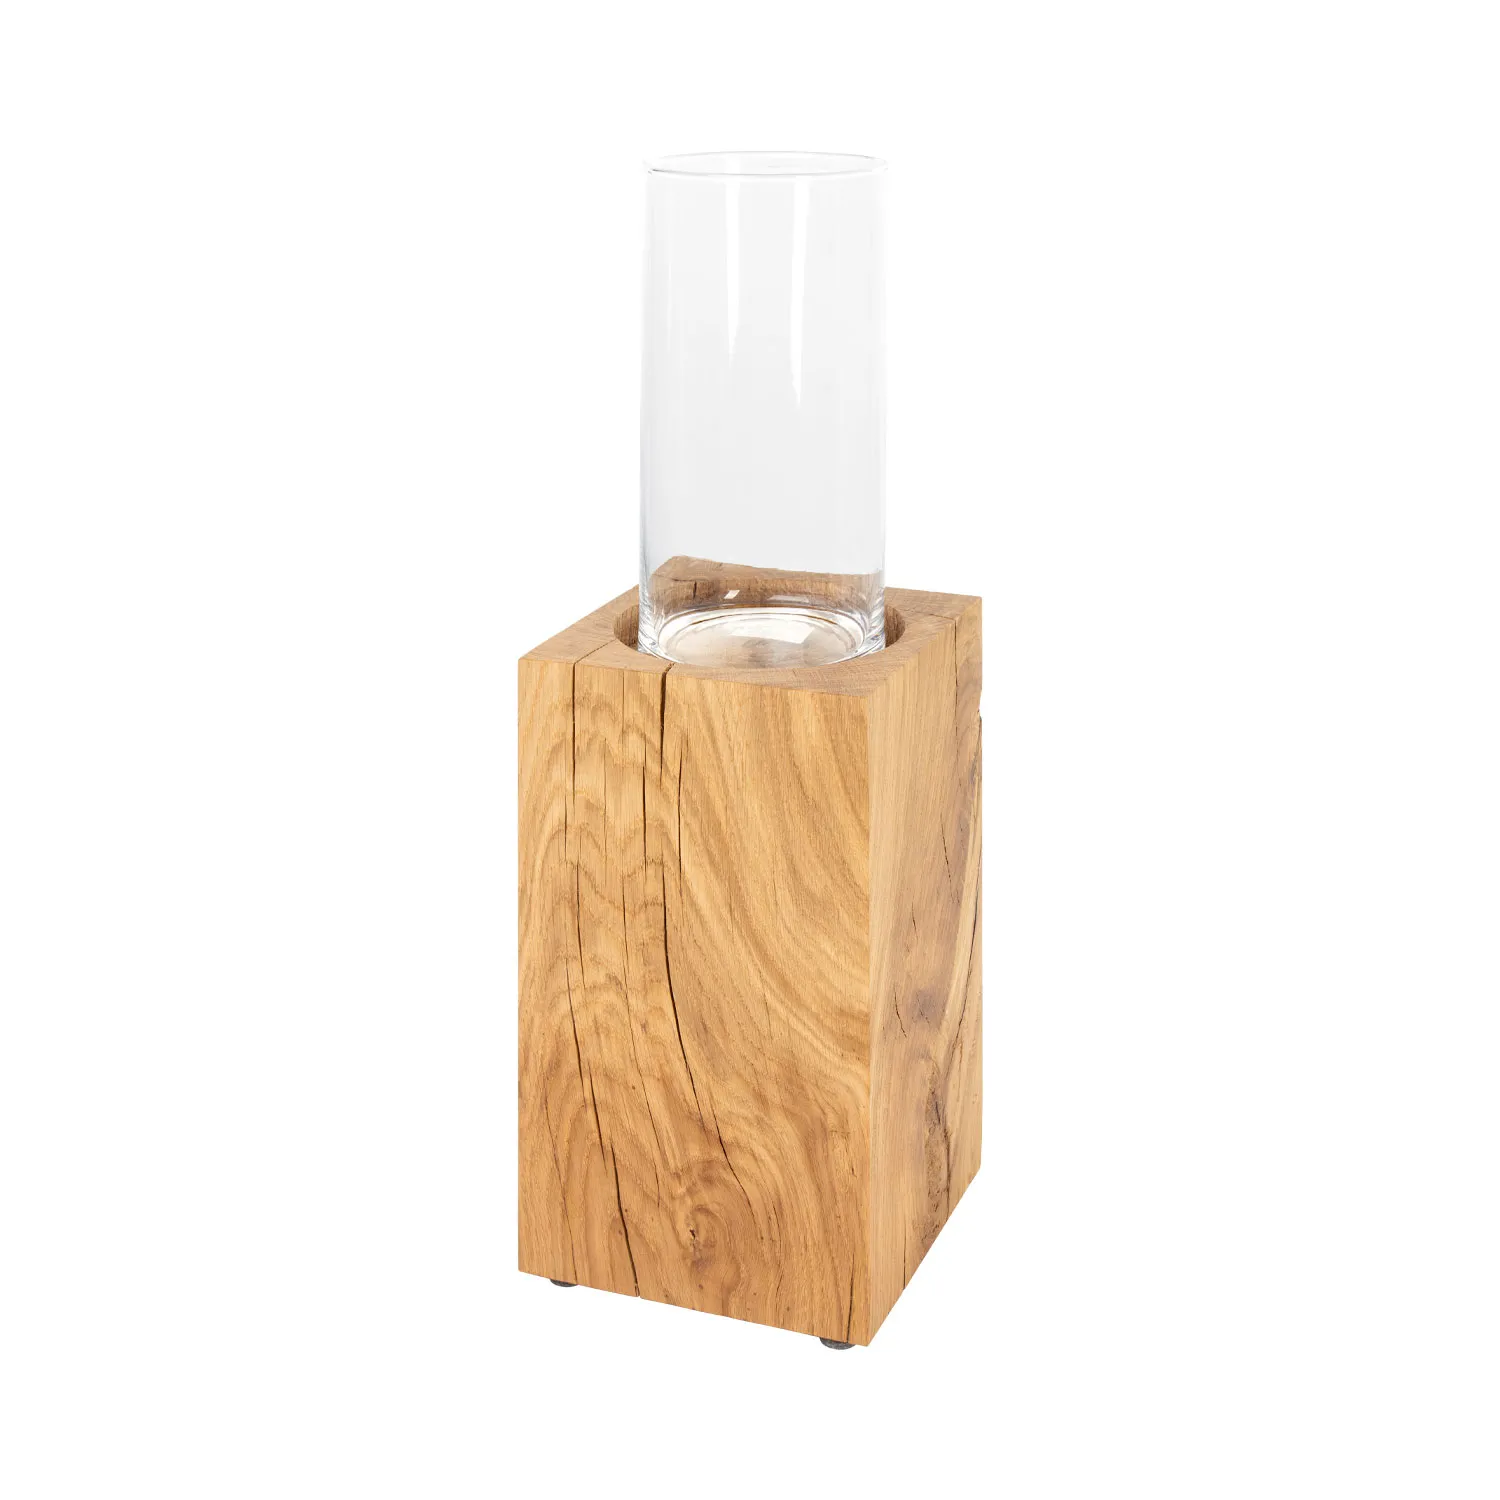 Dekosäule aus Holz mit Aussparung und durchsichtigem Zylinder aus Glas als Windlicht